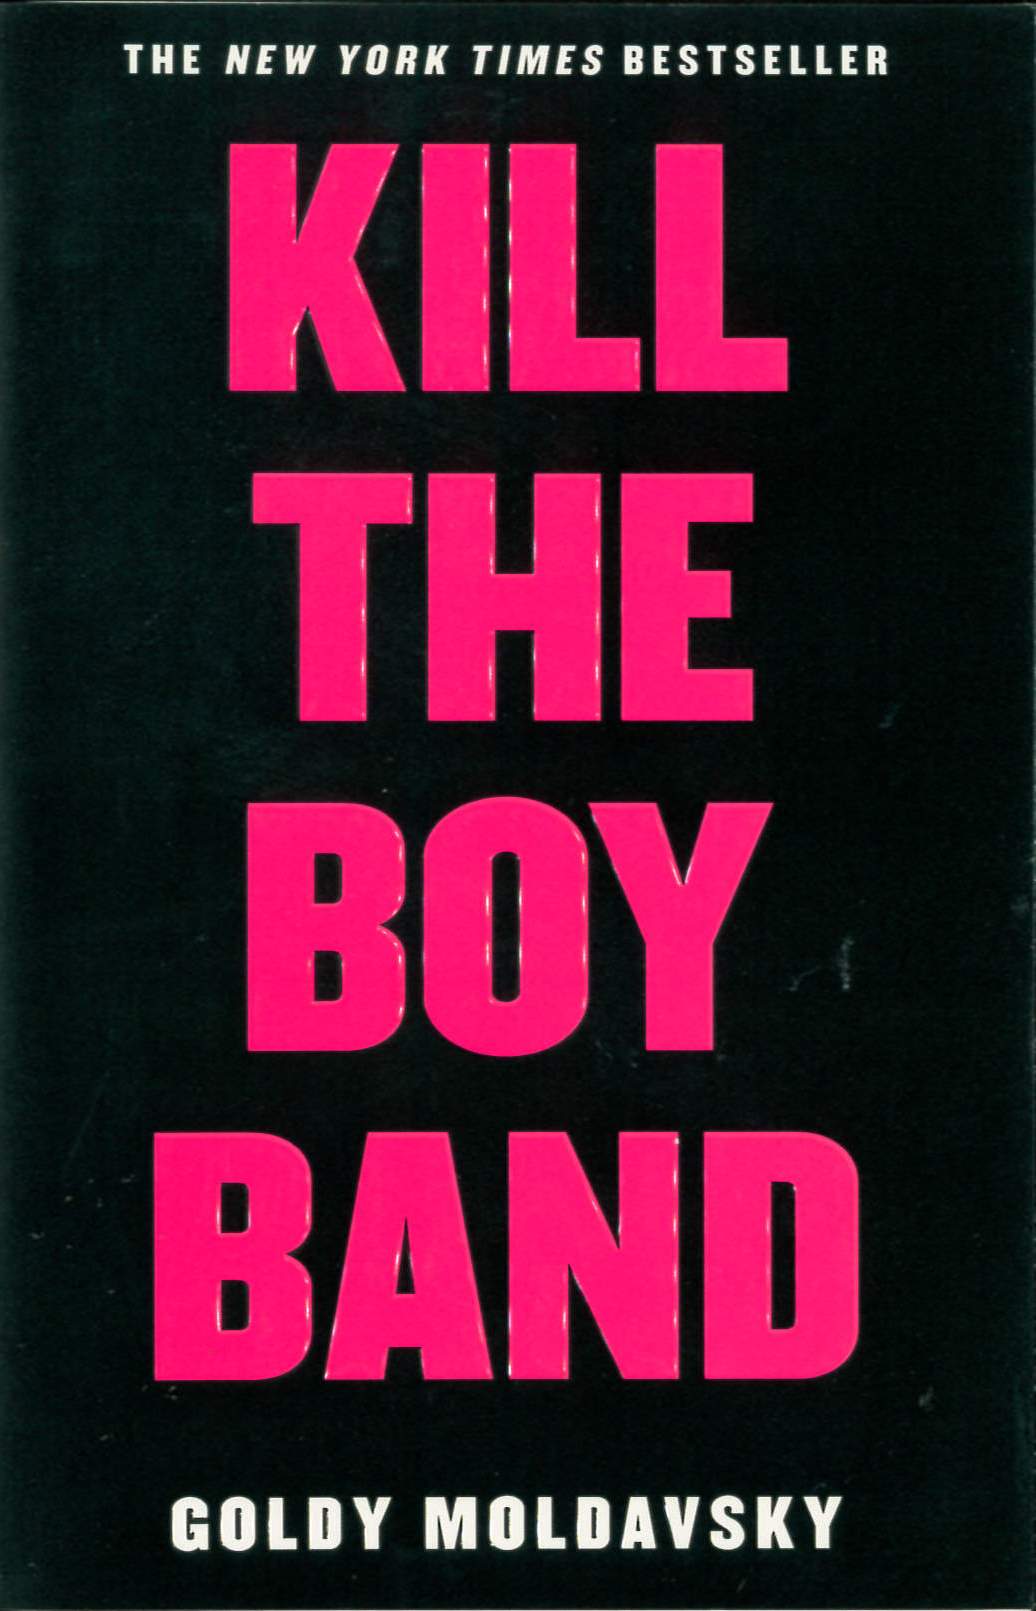 Kill the boy band /